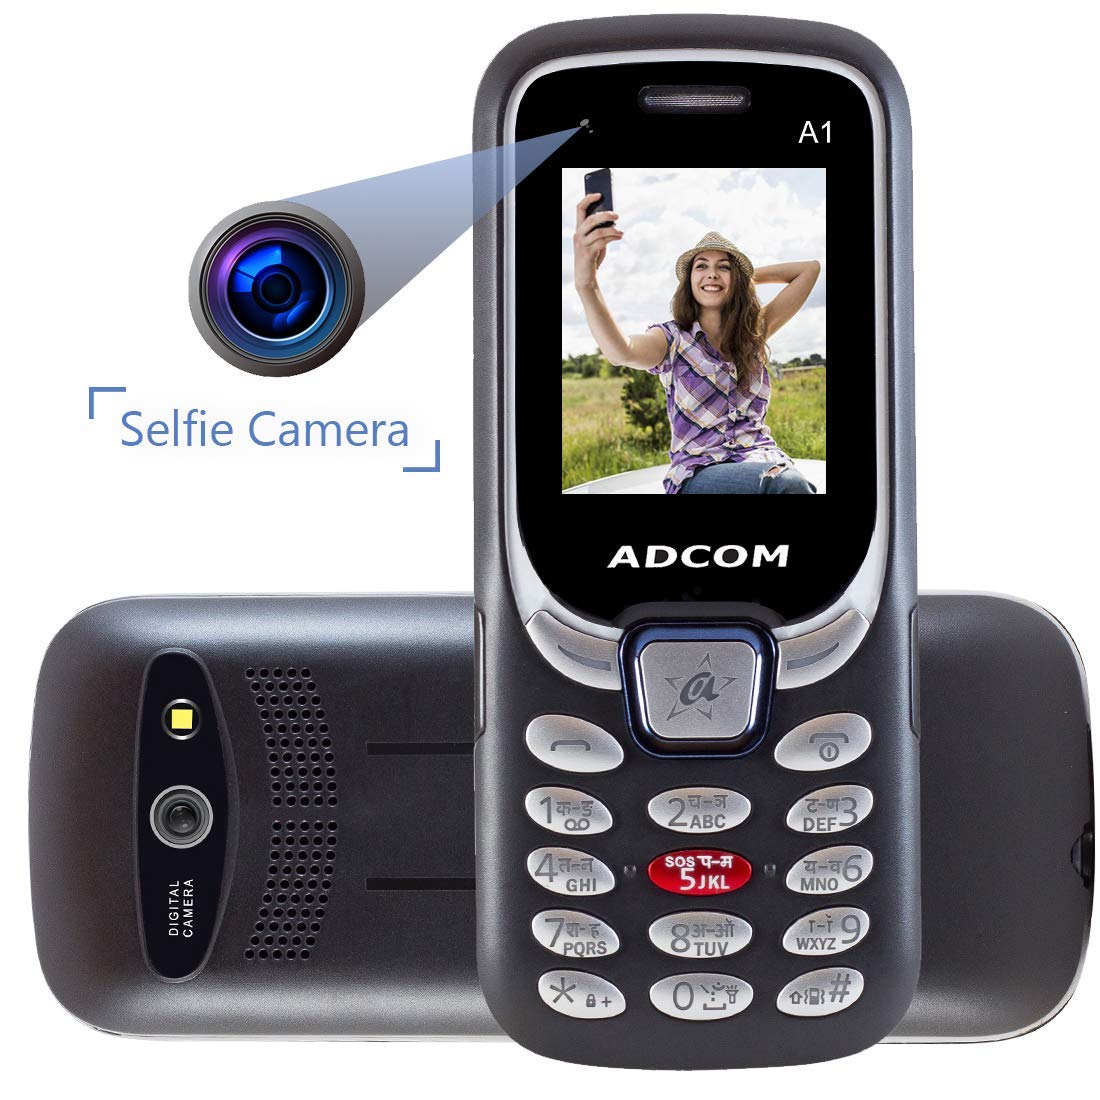 Adcom A1 Selfie, un teléfono funcional asequible con cámara para selfies lanzado: precio, características